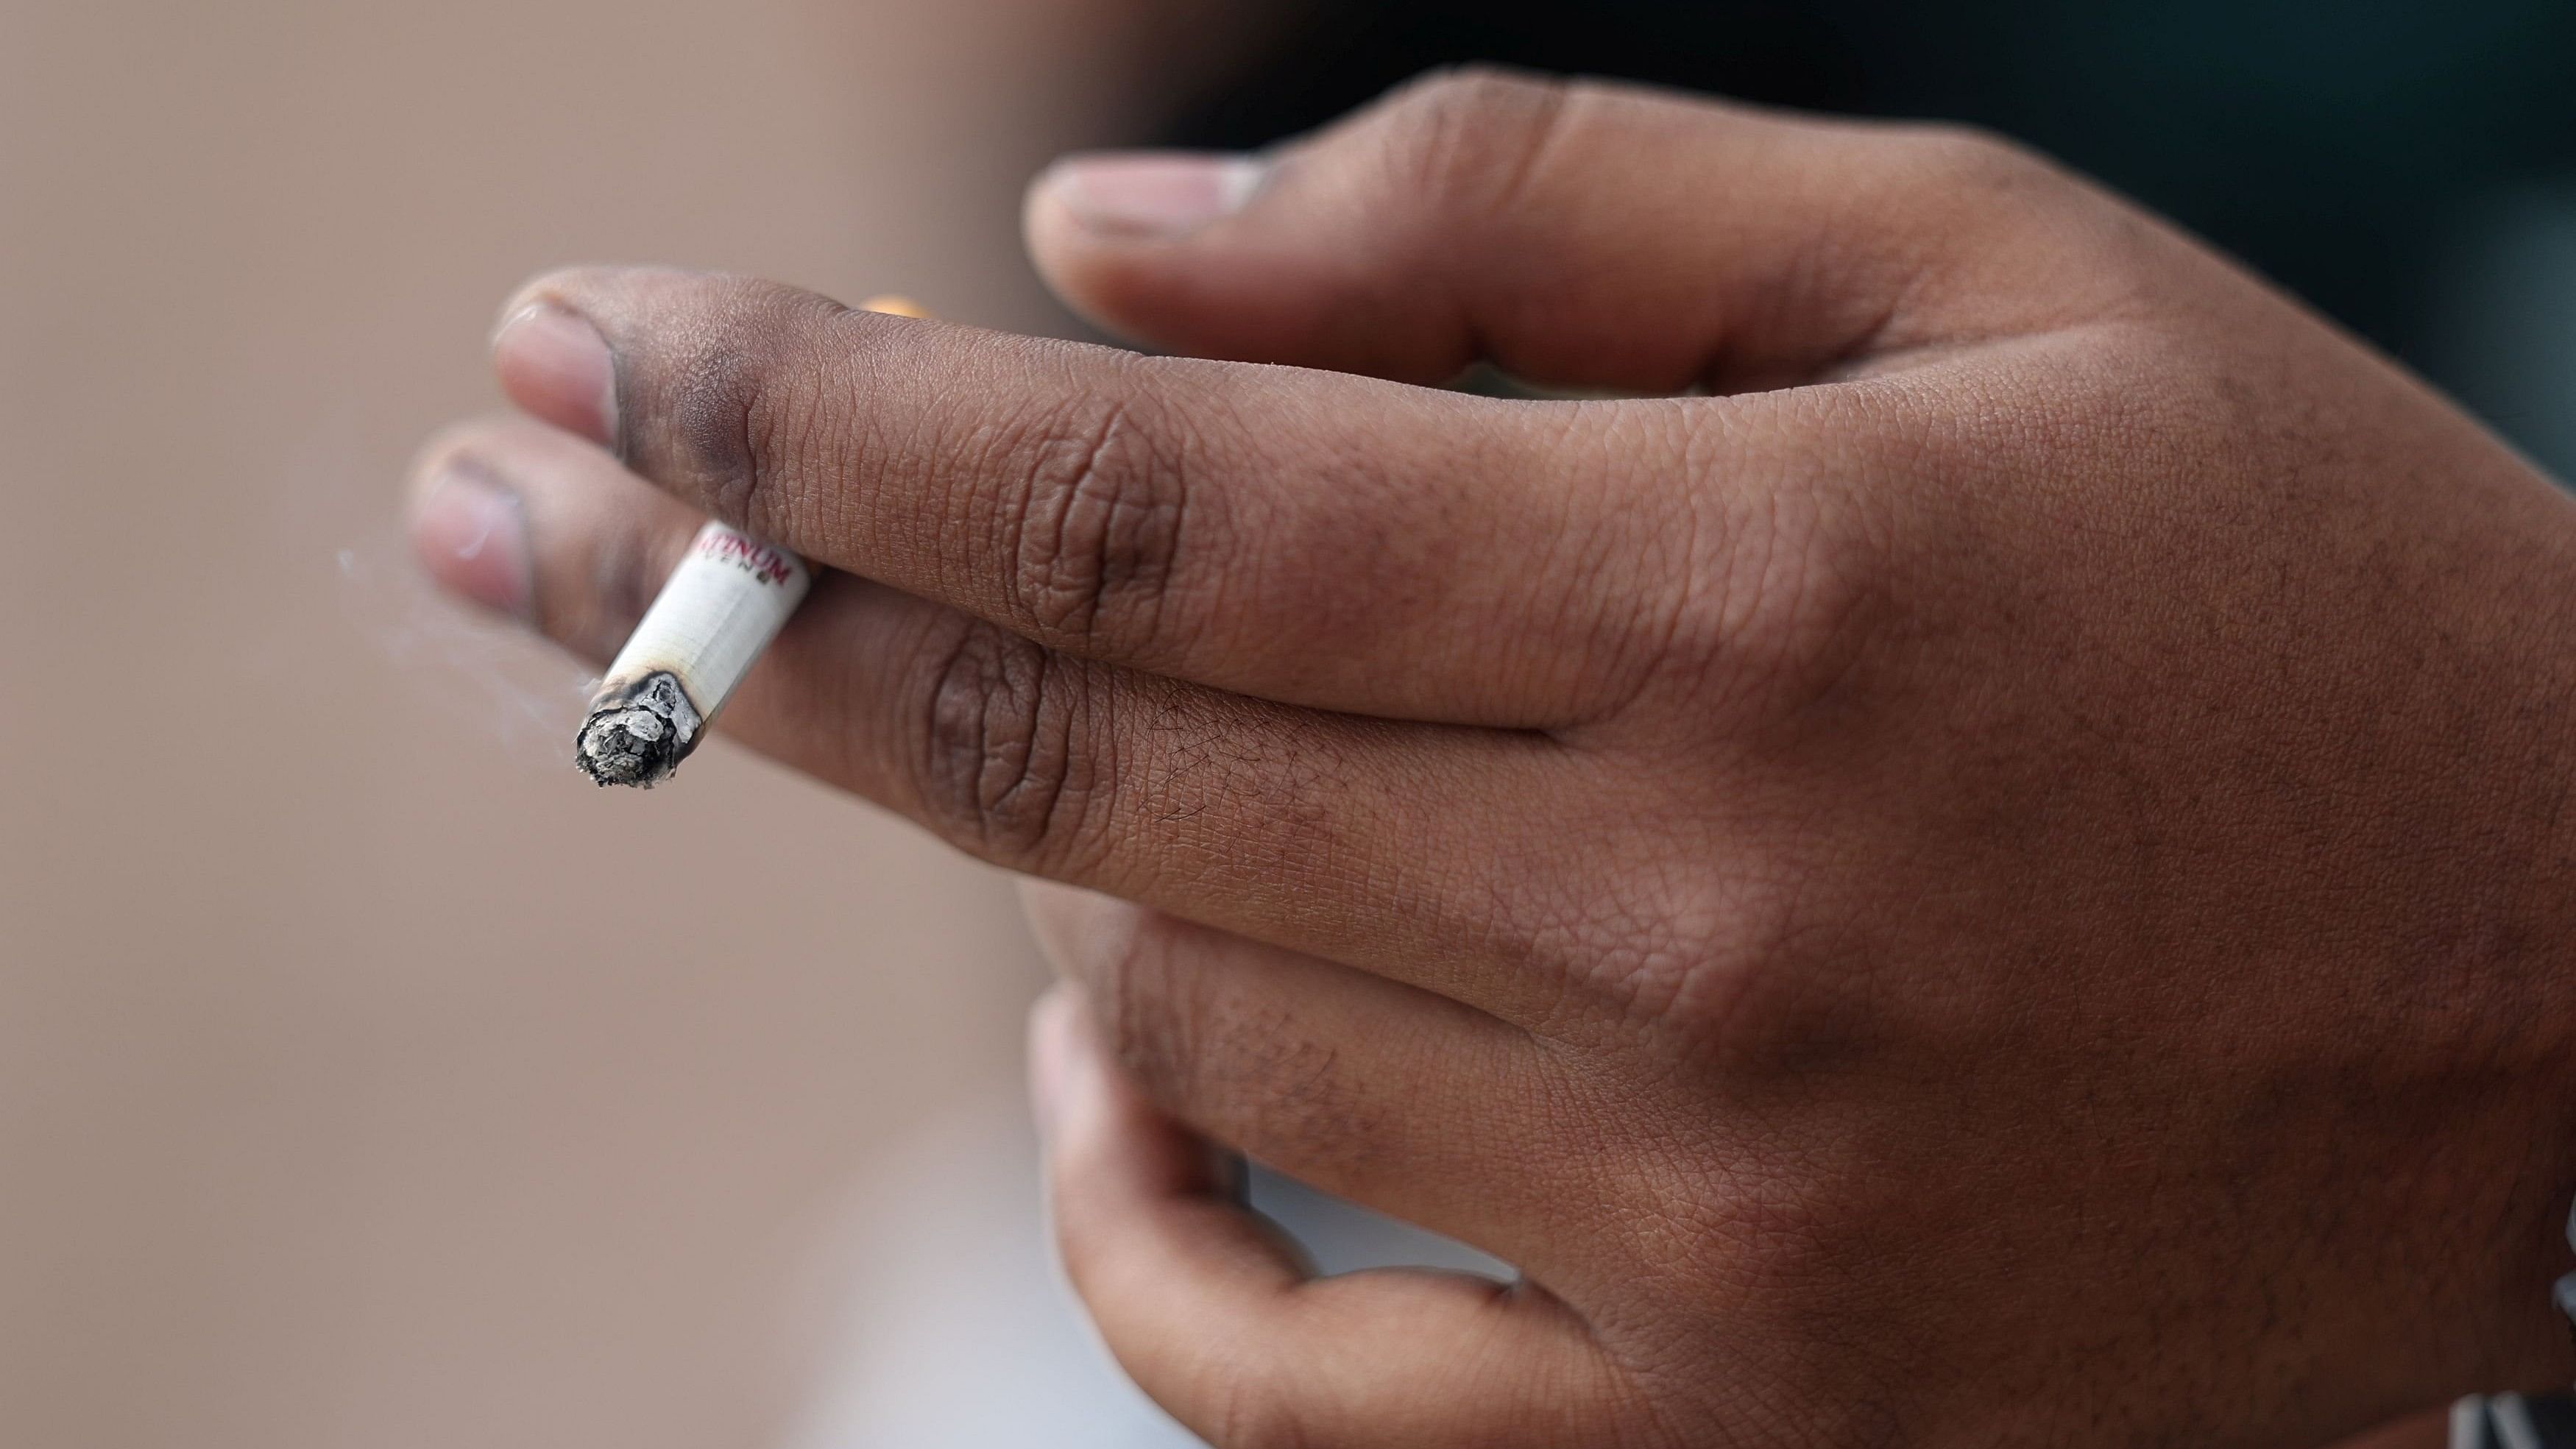 <div class="paragraphs"><p>A man holds his cigarette as he smokes. (Representative Image)</p></div>